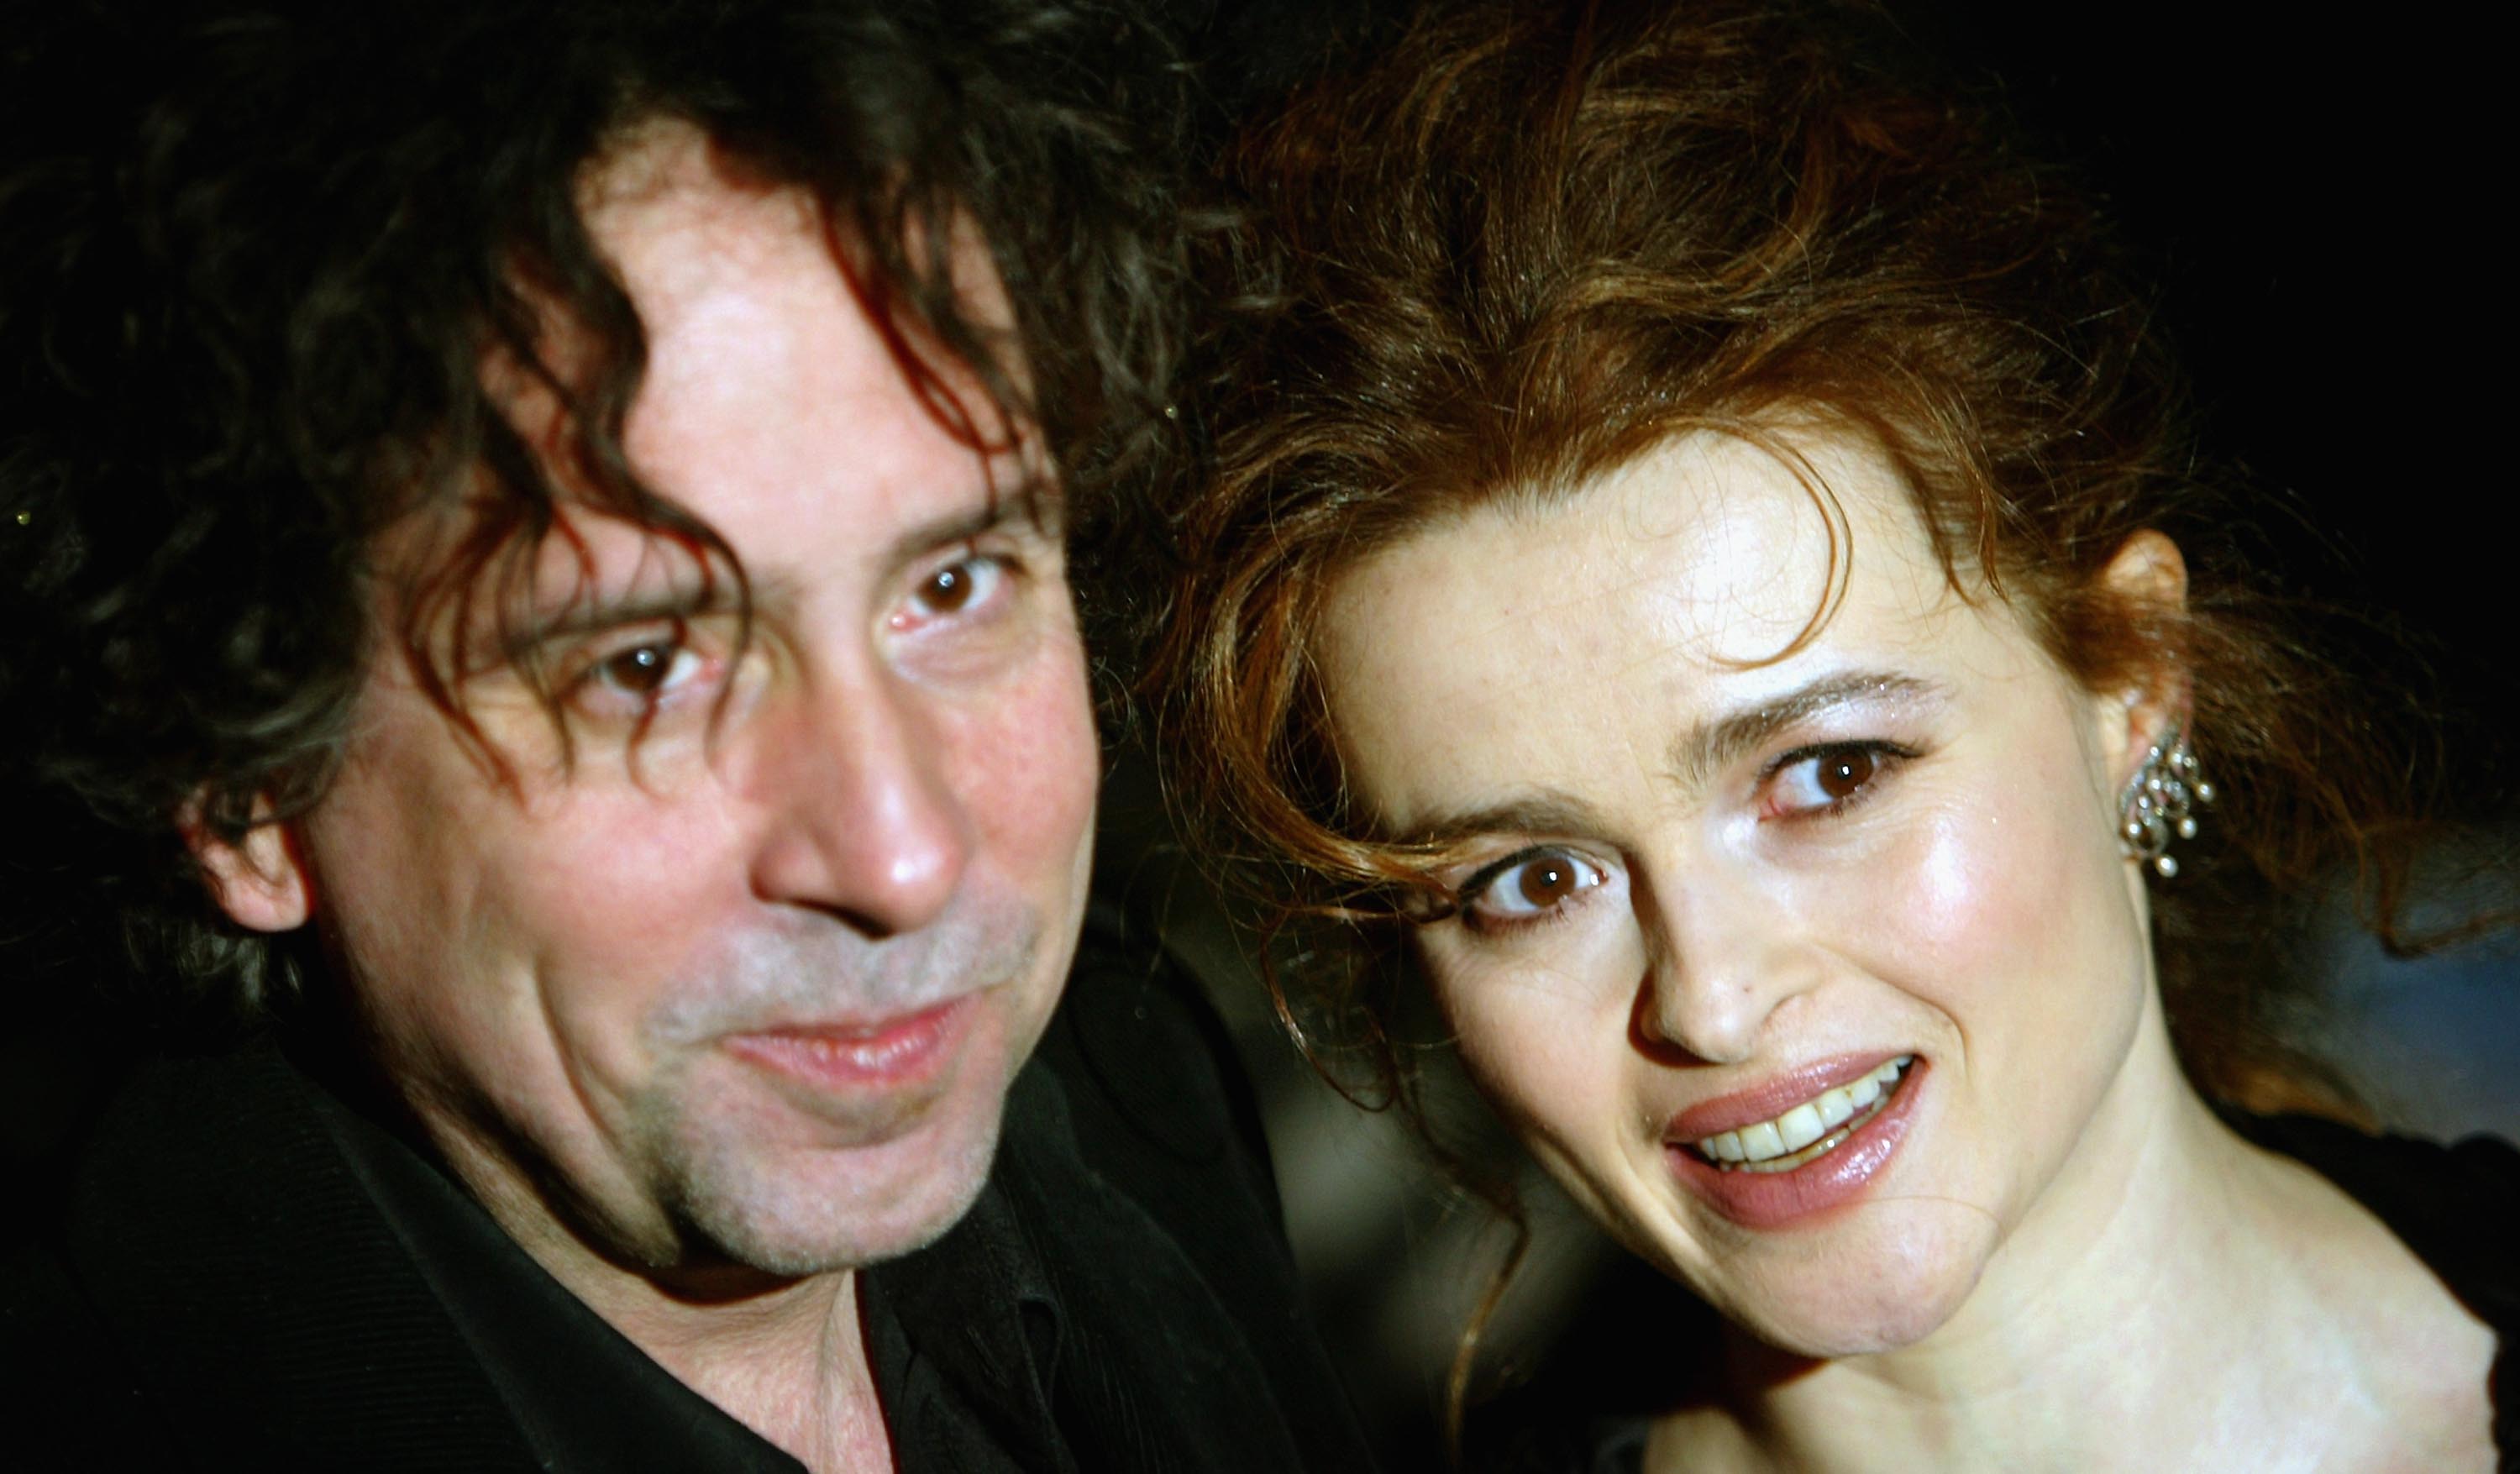 Burton con su entonces pareja y frecuente colaboradora artística Helena Bonham Carter en 2004